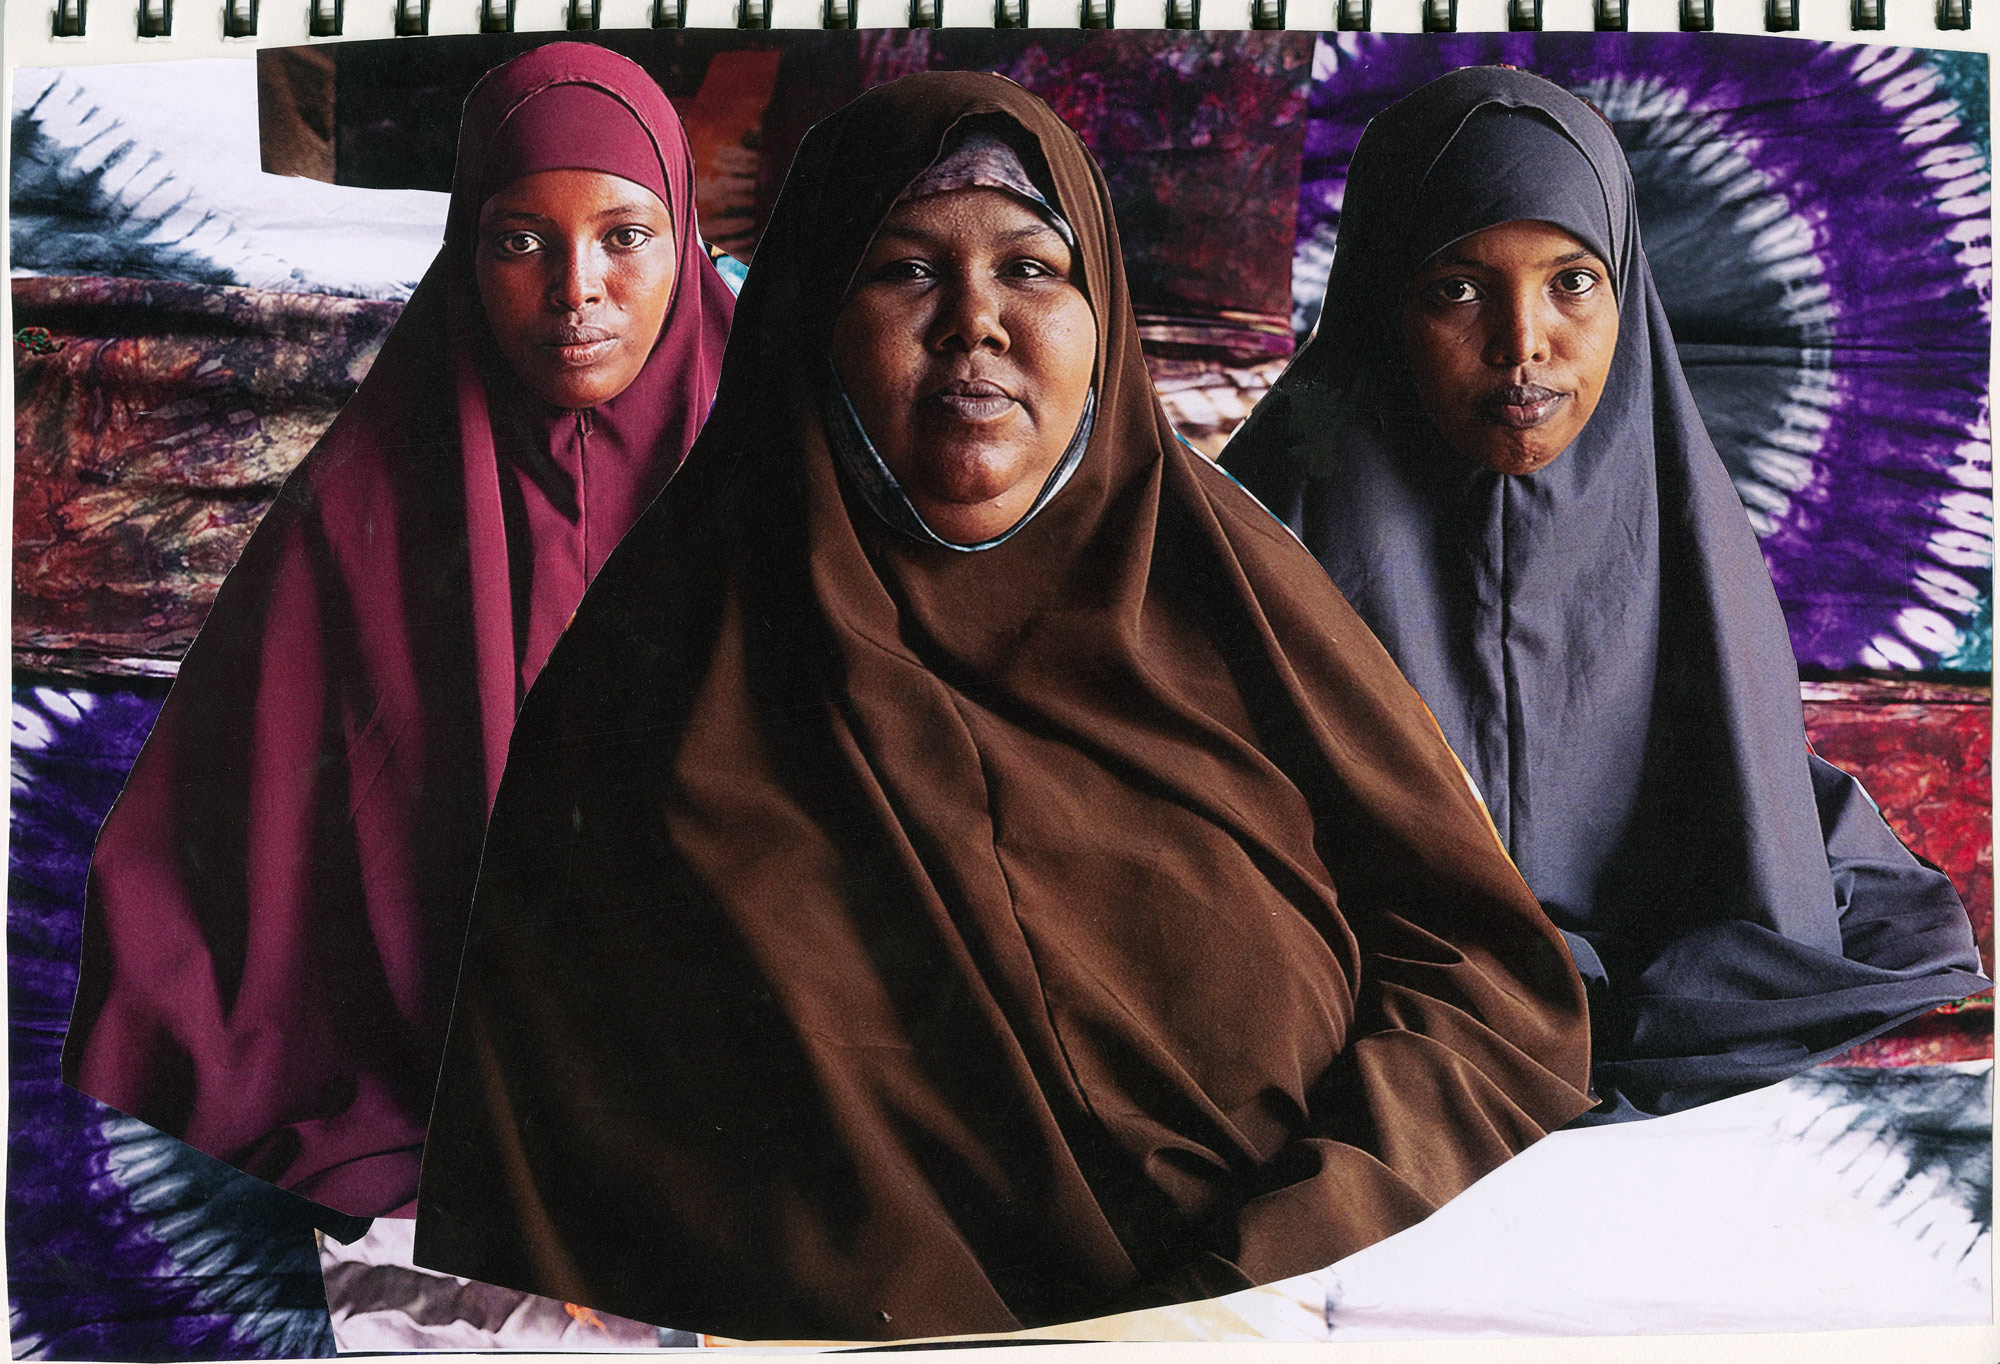 伊弗拉（Ifrah）在1989年出生於索馬利亞。她受夫家虐待，在2007年為自身安全逃離索馬利亞，前往達達阿比營地。她加入非政府組織學會紮染技術，現在也向其他婦女分享所學，幫助她們獨立；她也和其他非政府組織合作，致力於推動營地婦女賦權。肯亞。達達阿比，達加哈雷，2021年6月15日。